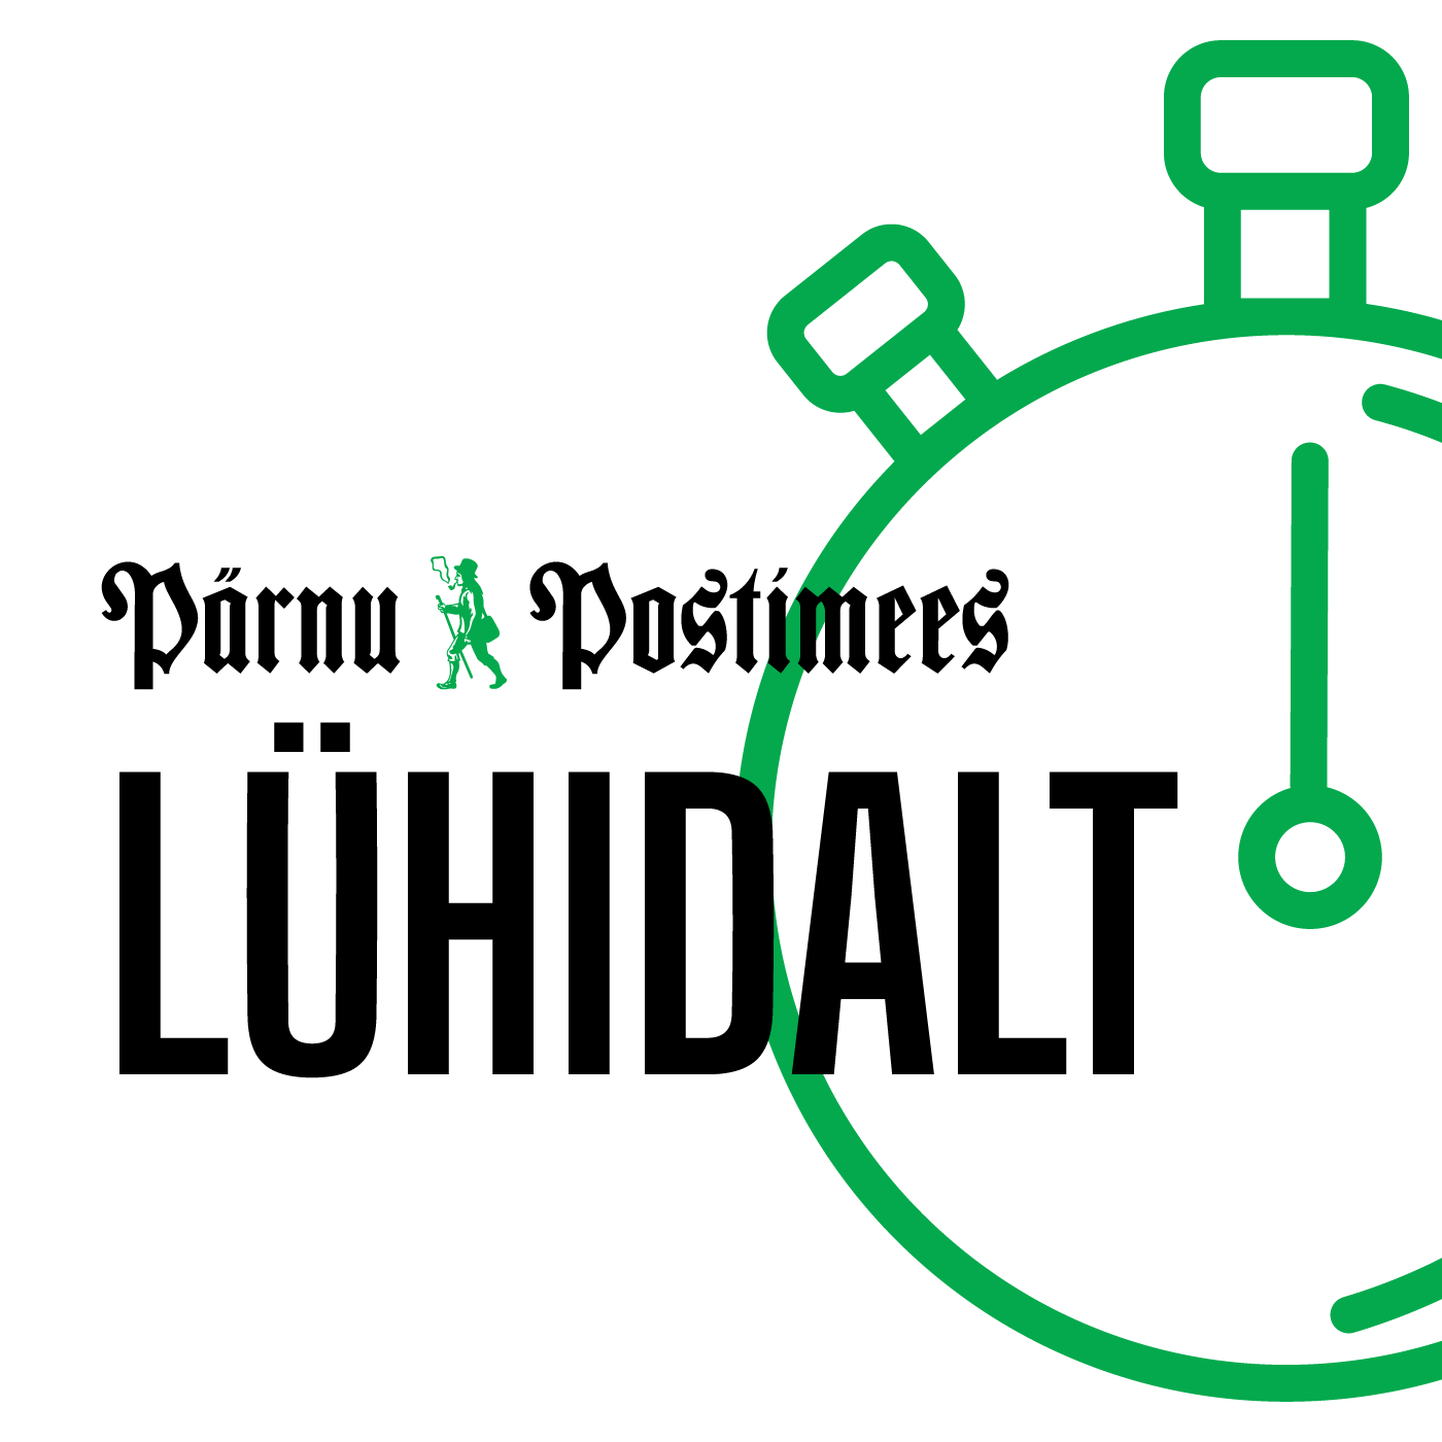 Pärnu Postimees võtab uudistenädala kokku taskuhäälingusaates “Lühidalt”.